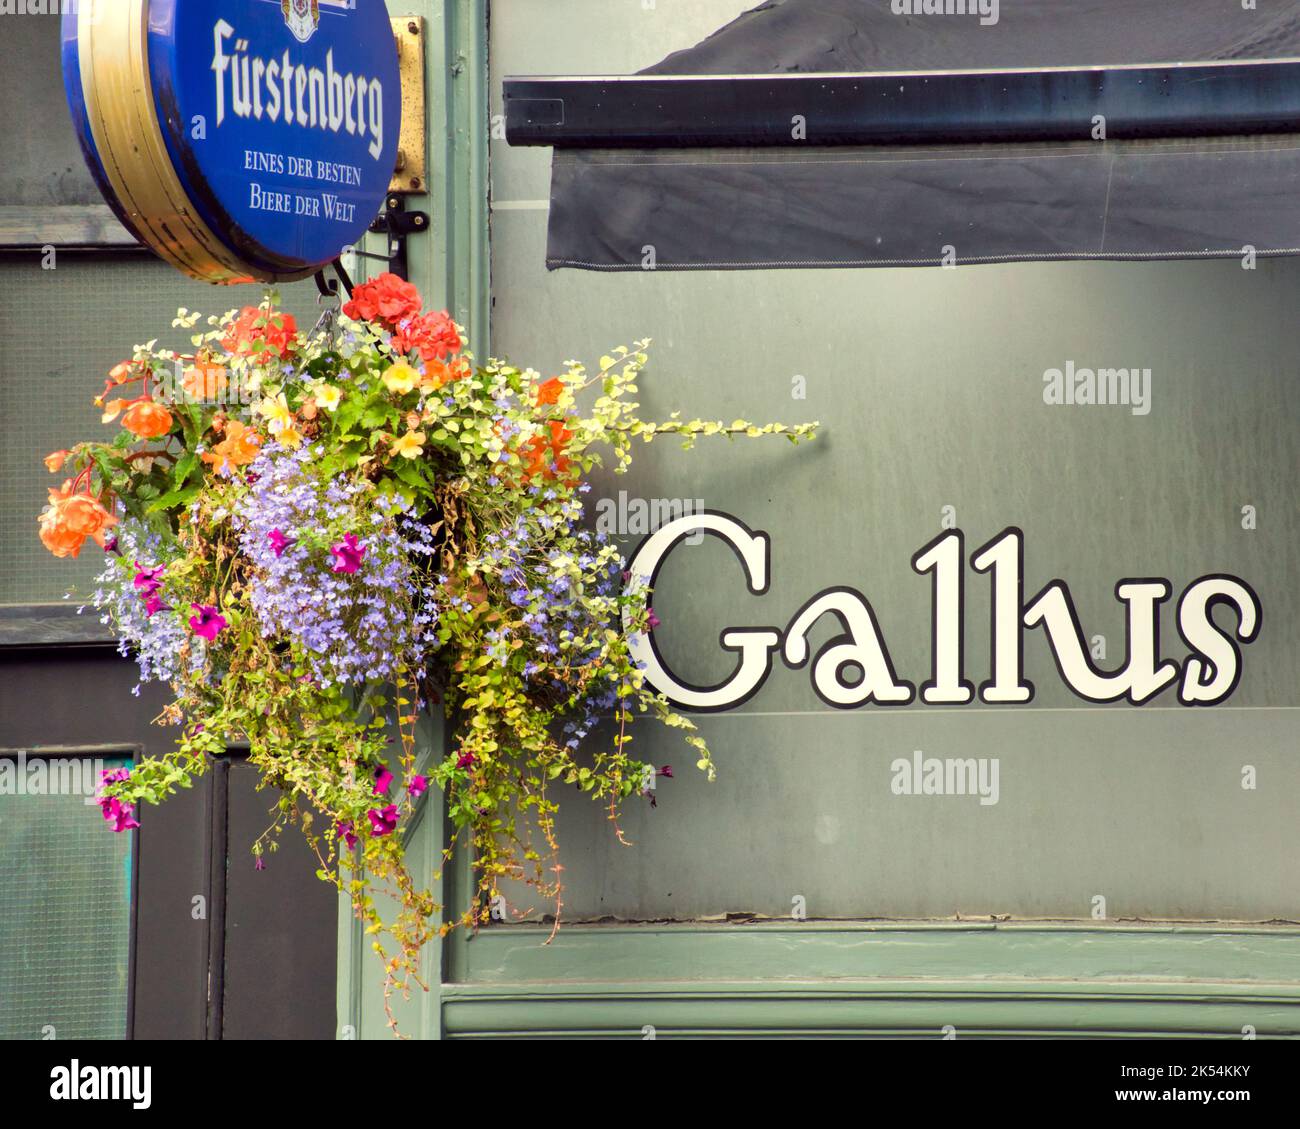 Umgangssprachlich Bar Gallus genannt. 80 Dumbarton Road Teilck Glasgow G11 6NX. Übersetzt kühn oder gewagt Stockfoto